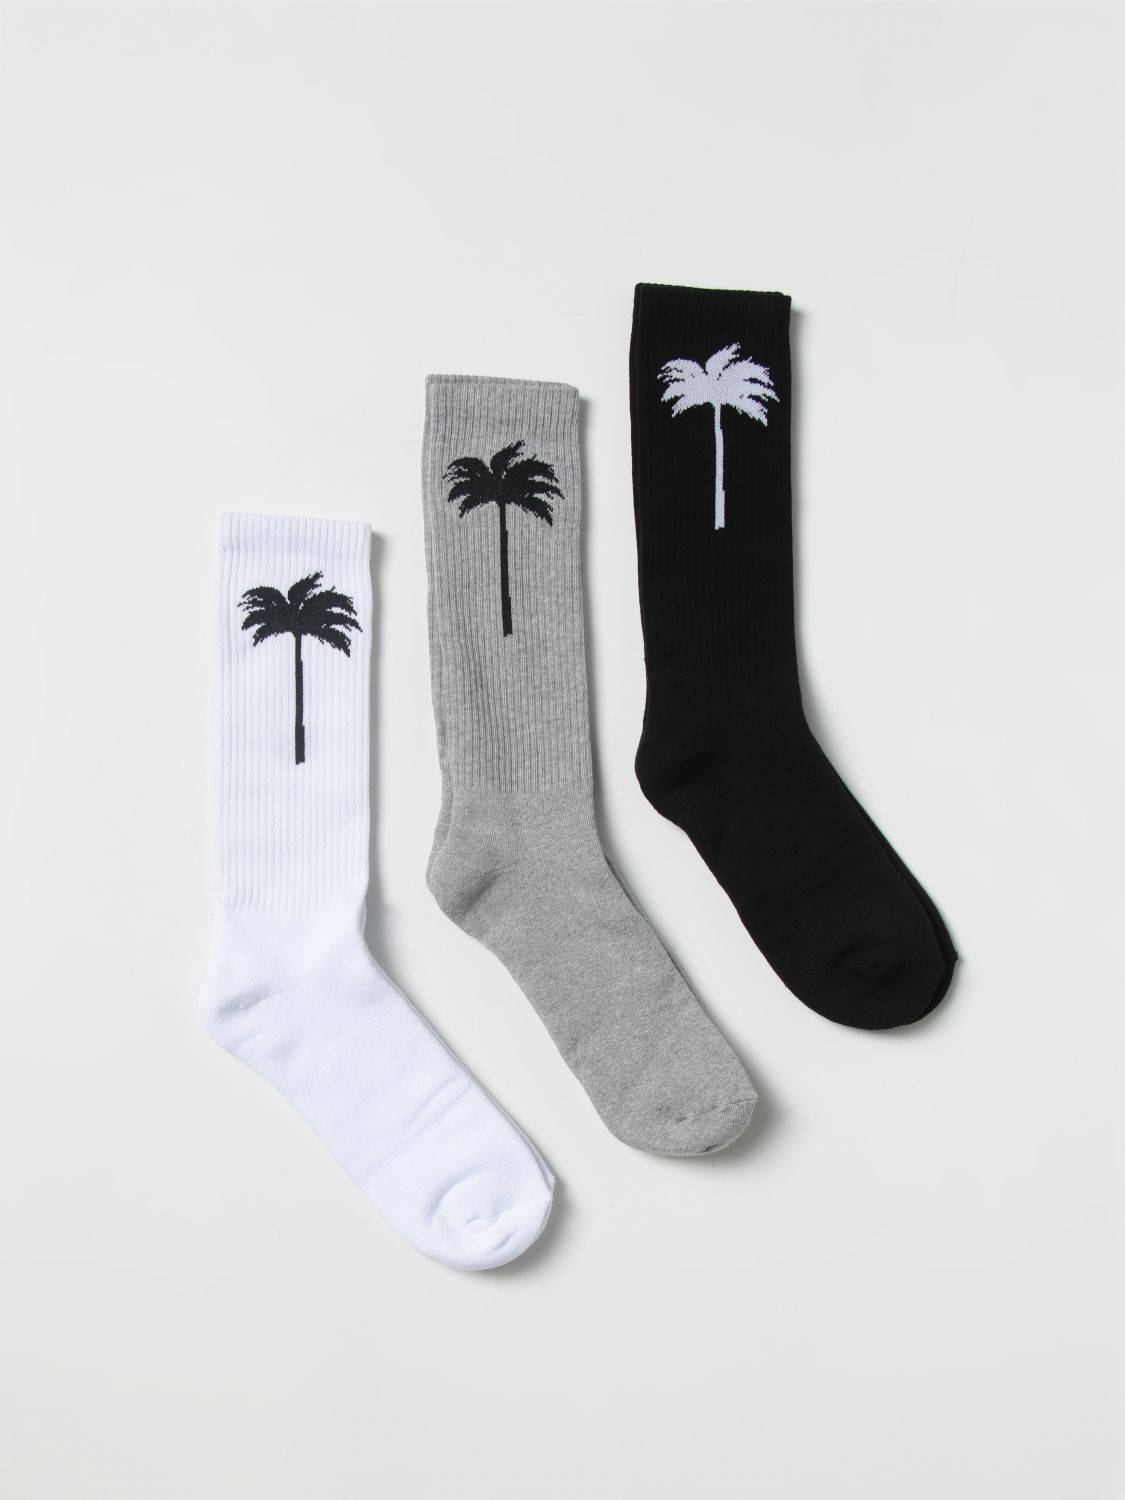 Socken Palm Angels: Palm Angels Herren Socken bunt 1